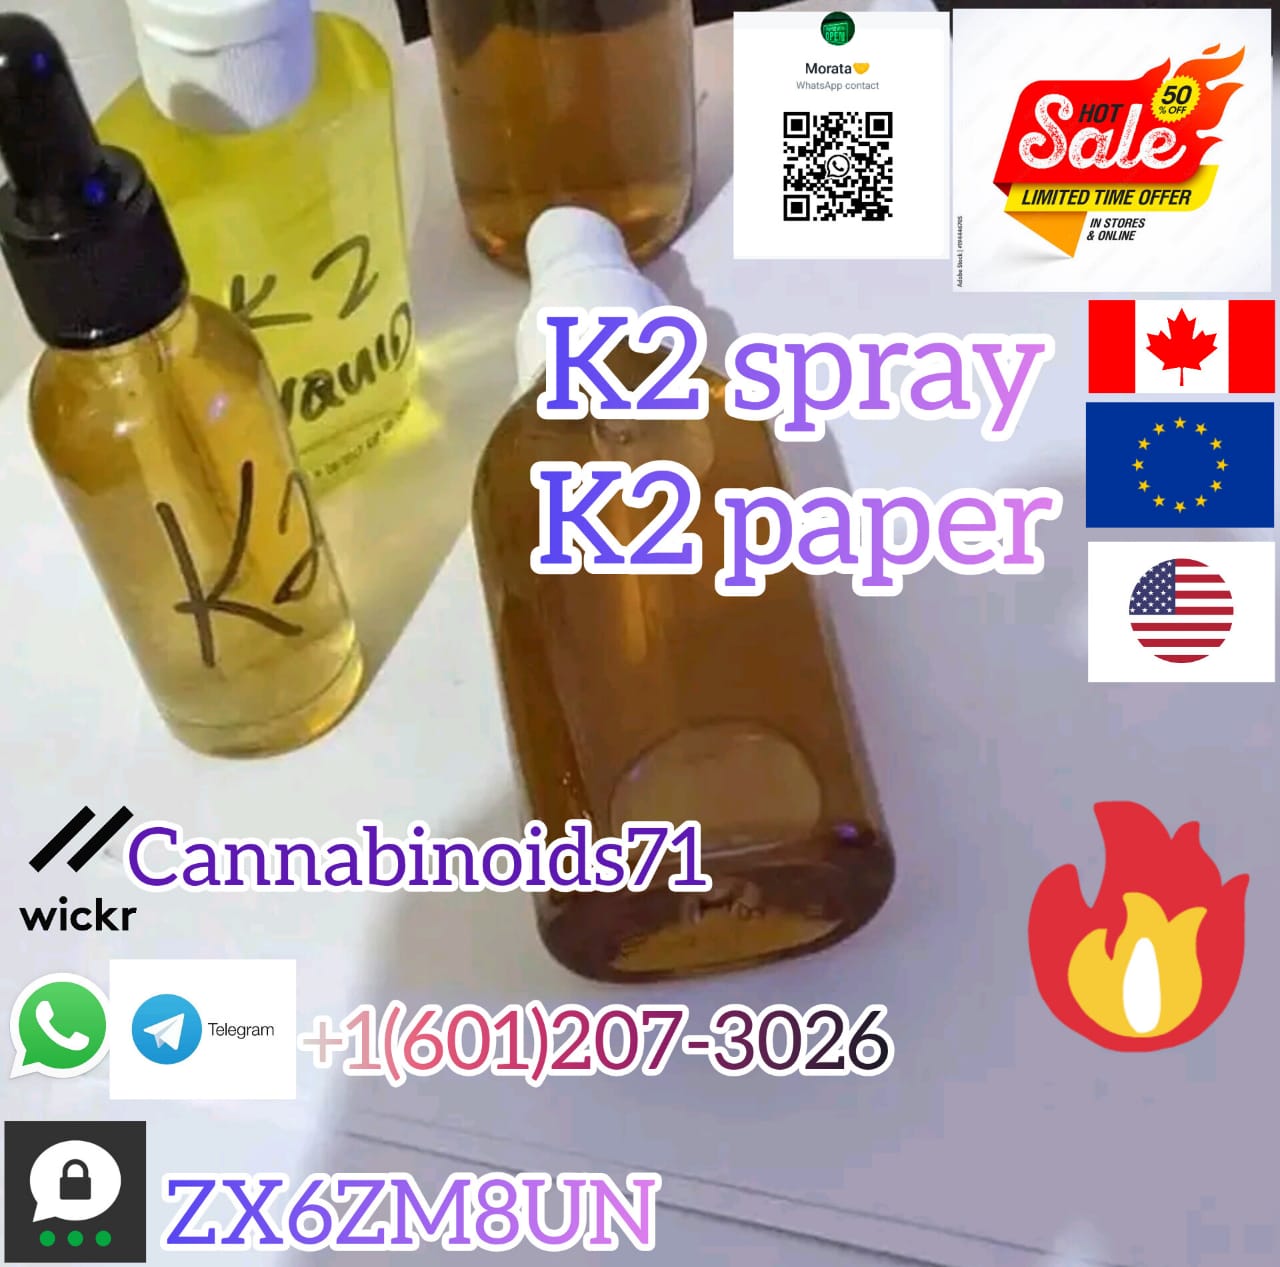 Telegram+16012073026 k2 soaked paper for sale, K2 Spice Paper, K2 Spice Spray Paper